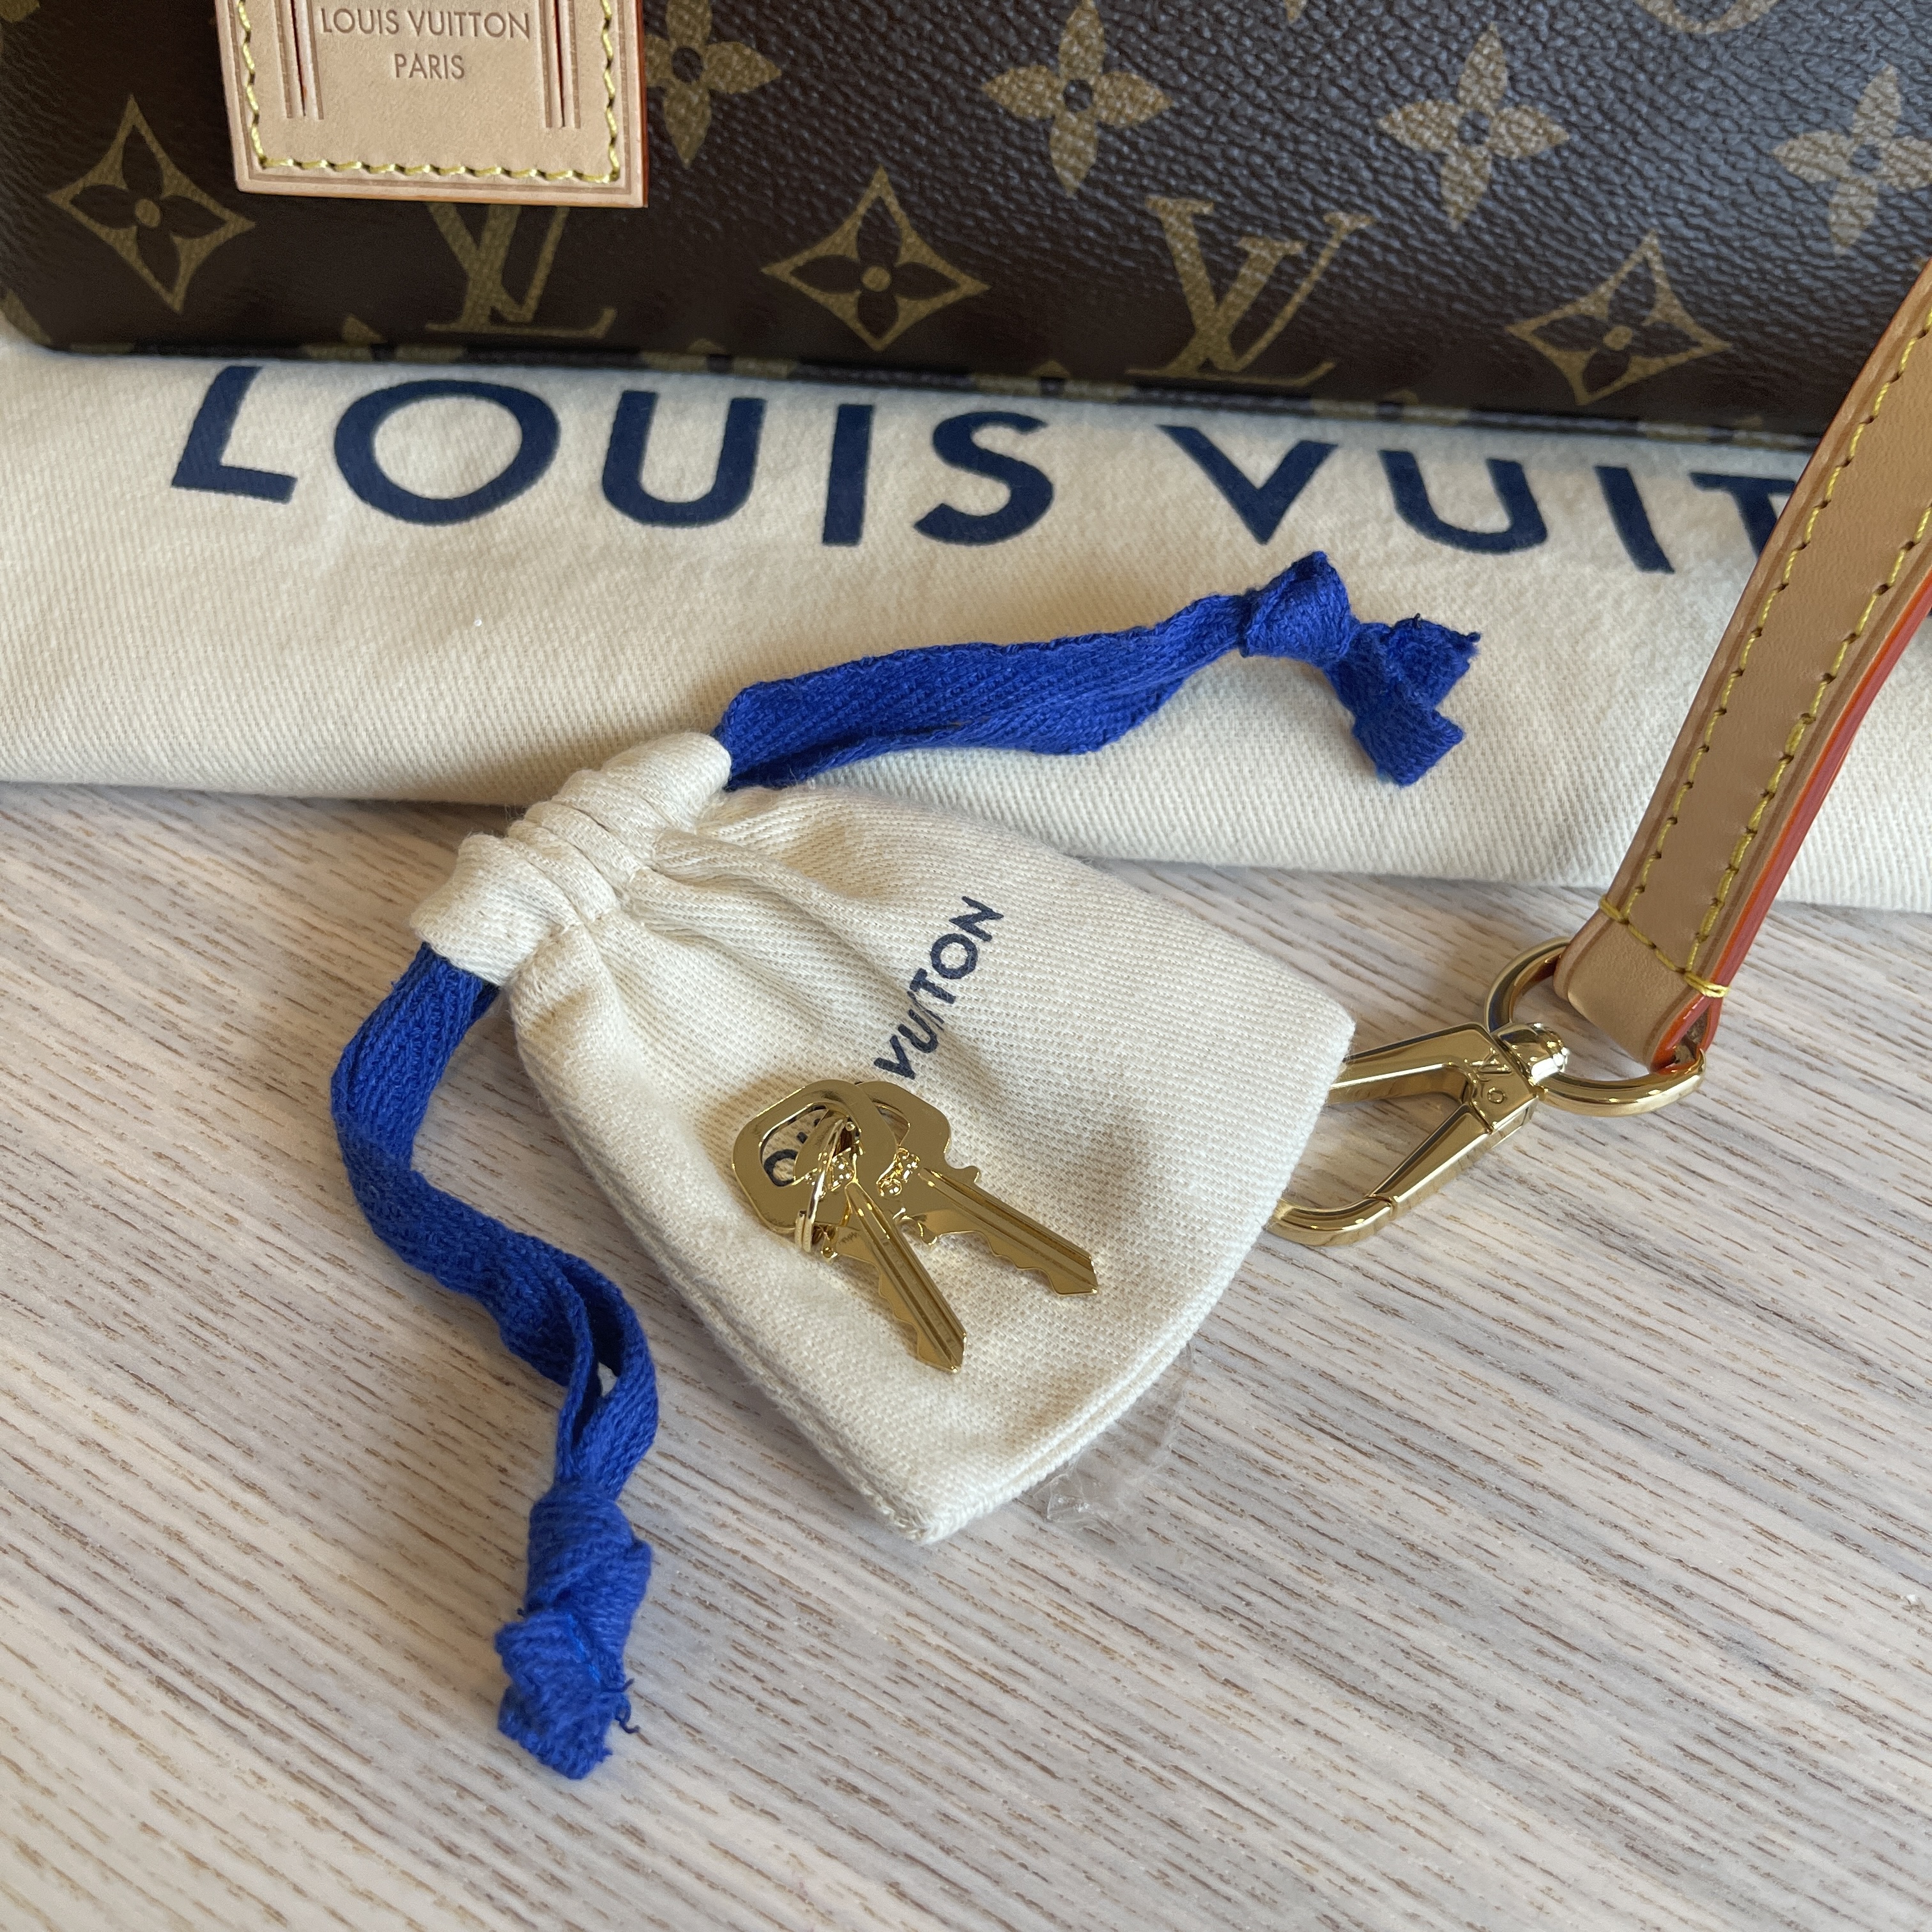 Lot - A handbag marked Louis Vuitton (Petit Palais) with pink